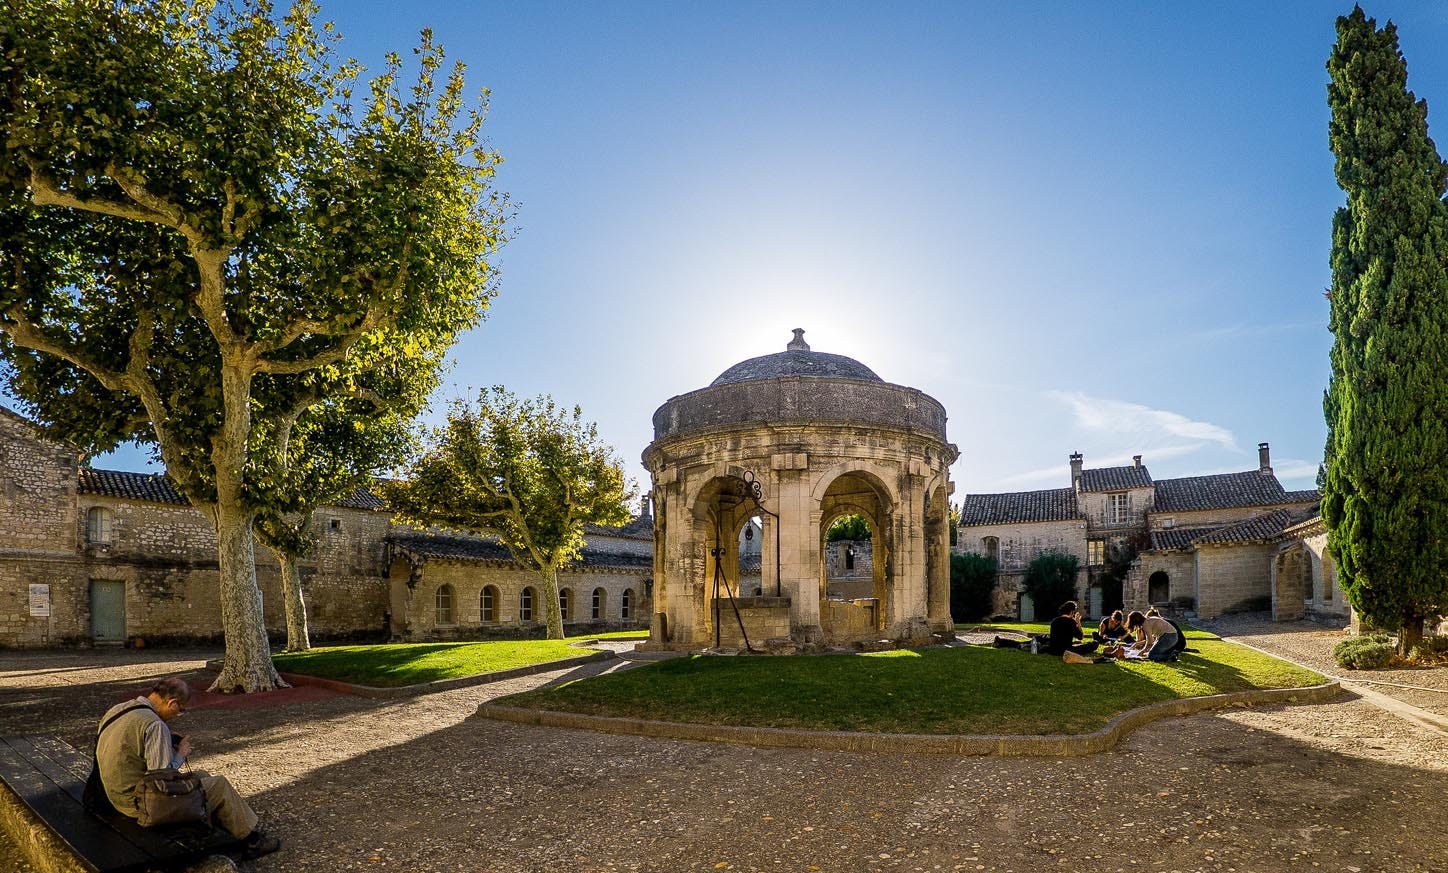 La Chartreuse de Villeneuve-lez-Avignon - France - ACCR - Association des  Centres culturels de rencontre